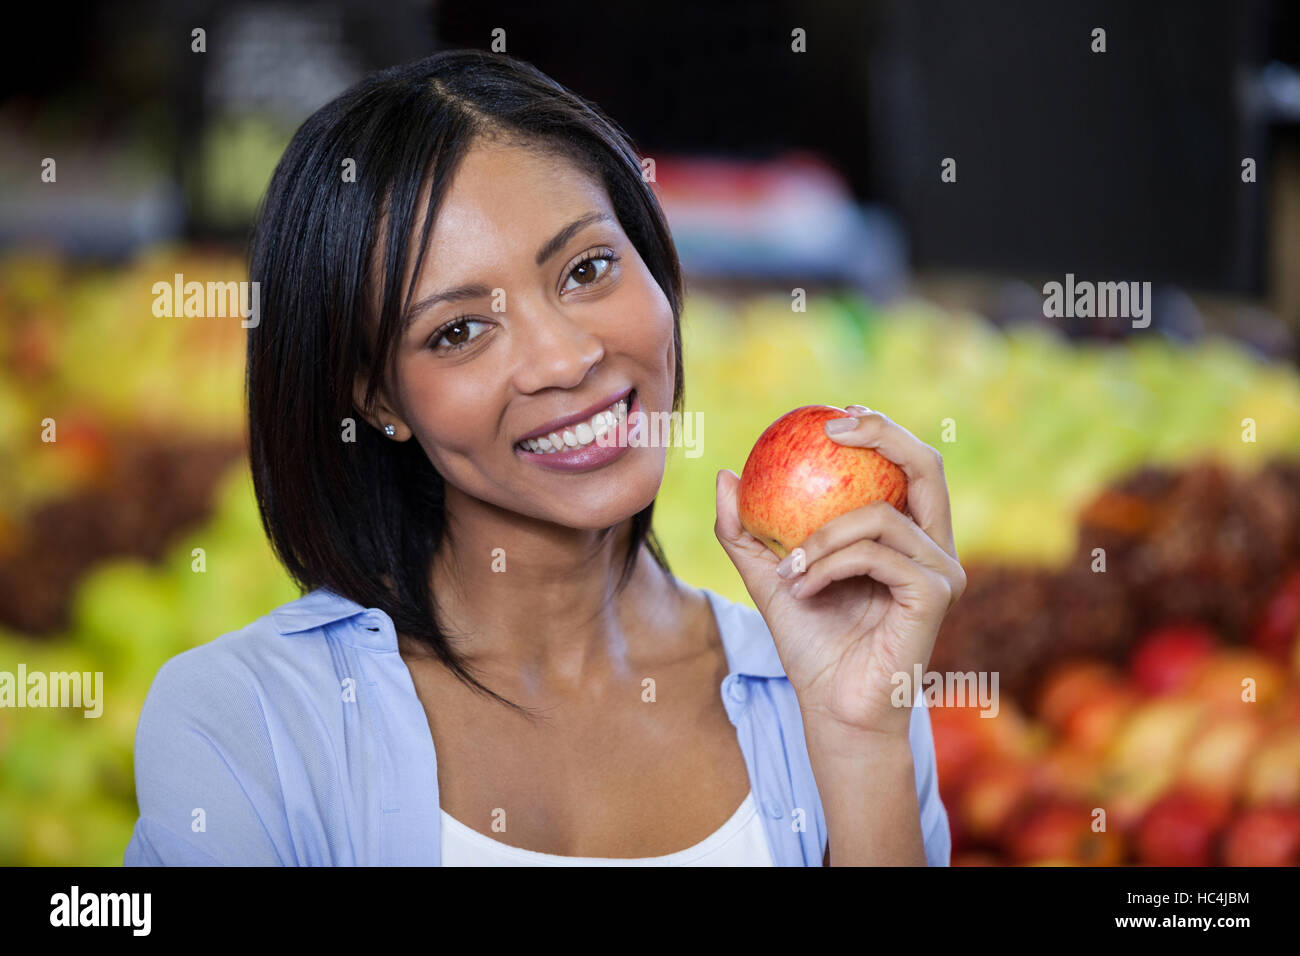 Portrait der schönen Frau hält einen Apfel Stockfoto